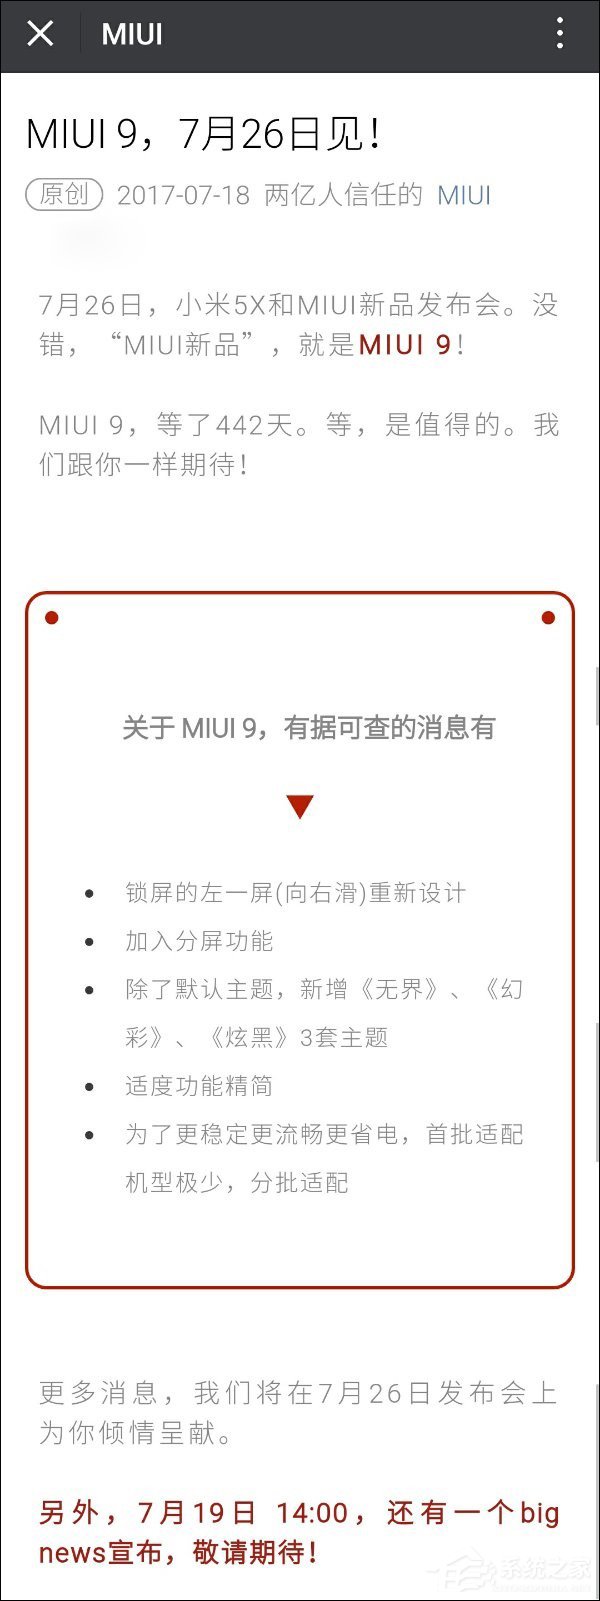 明天宣布big news！小米官方公开MIUI 9五大改进内容